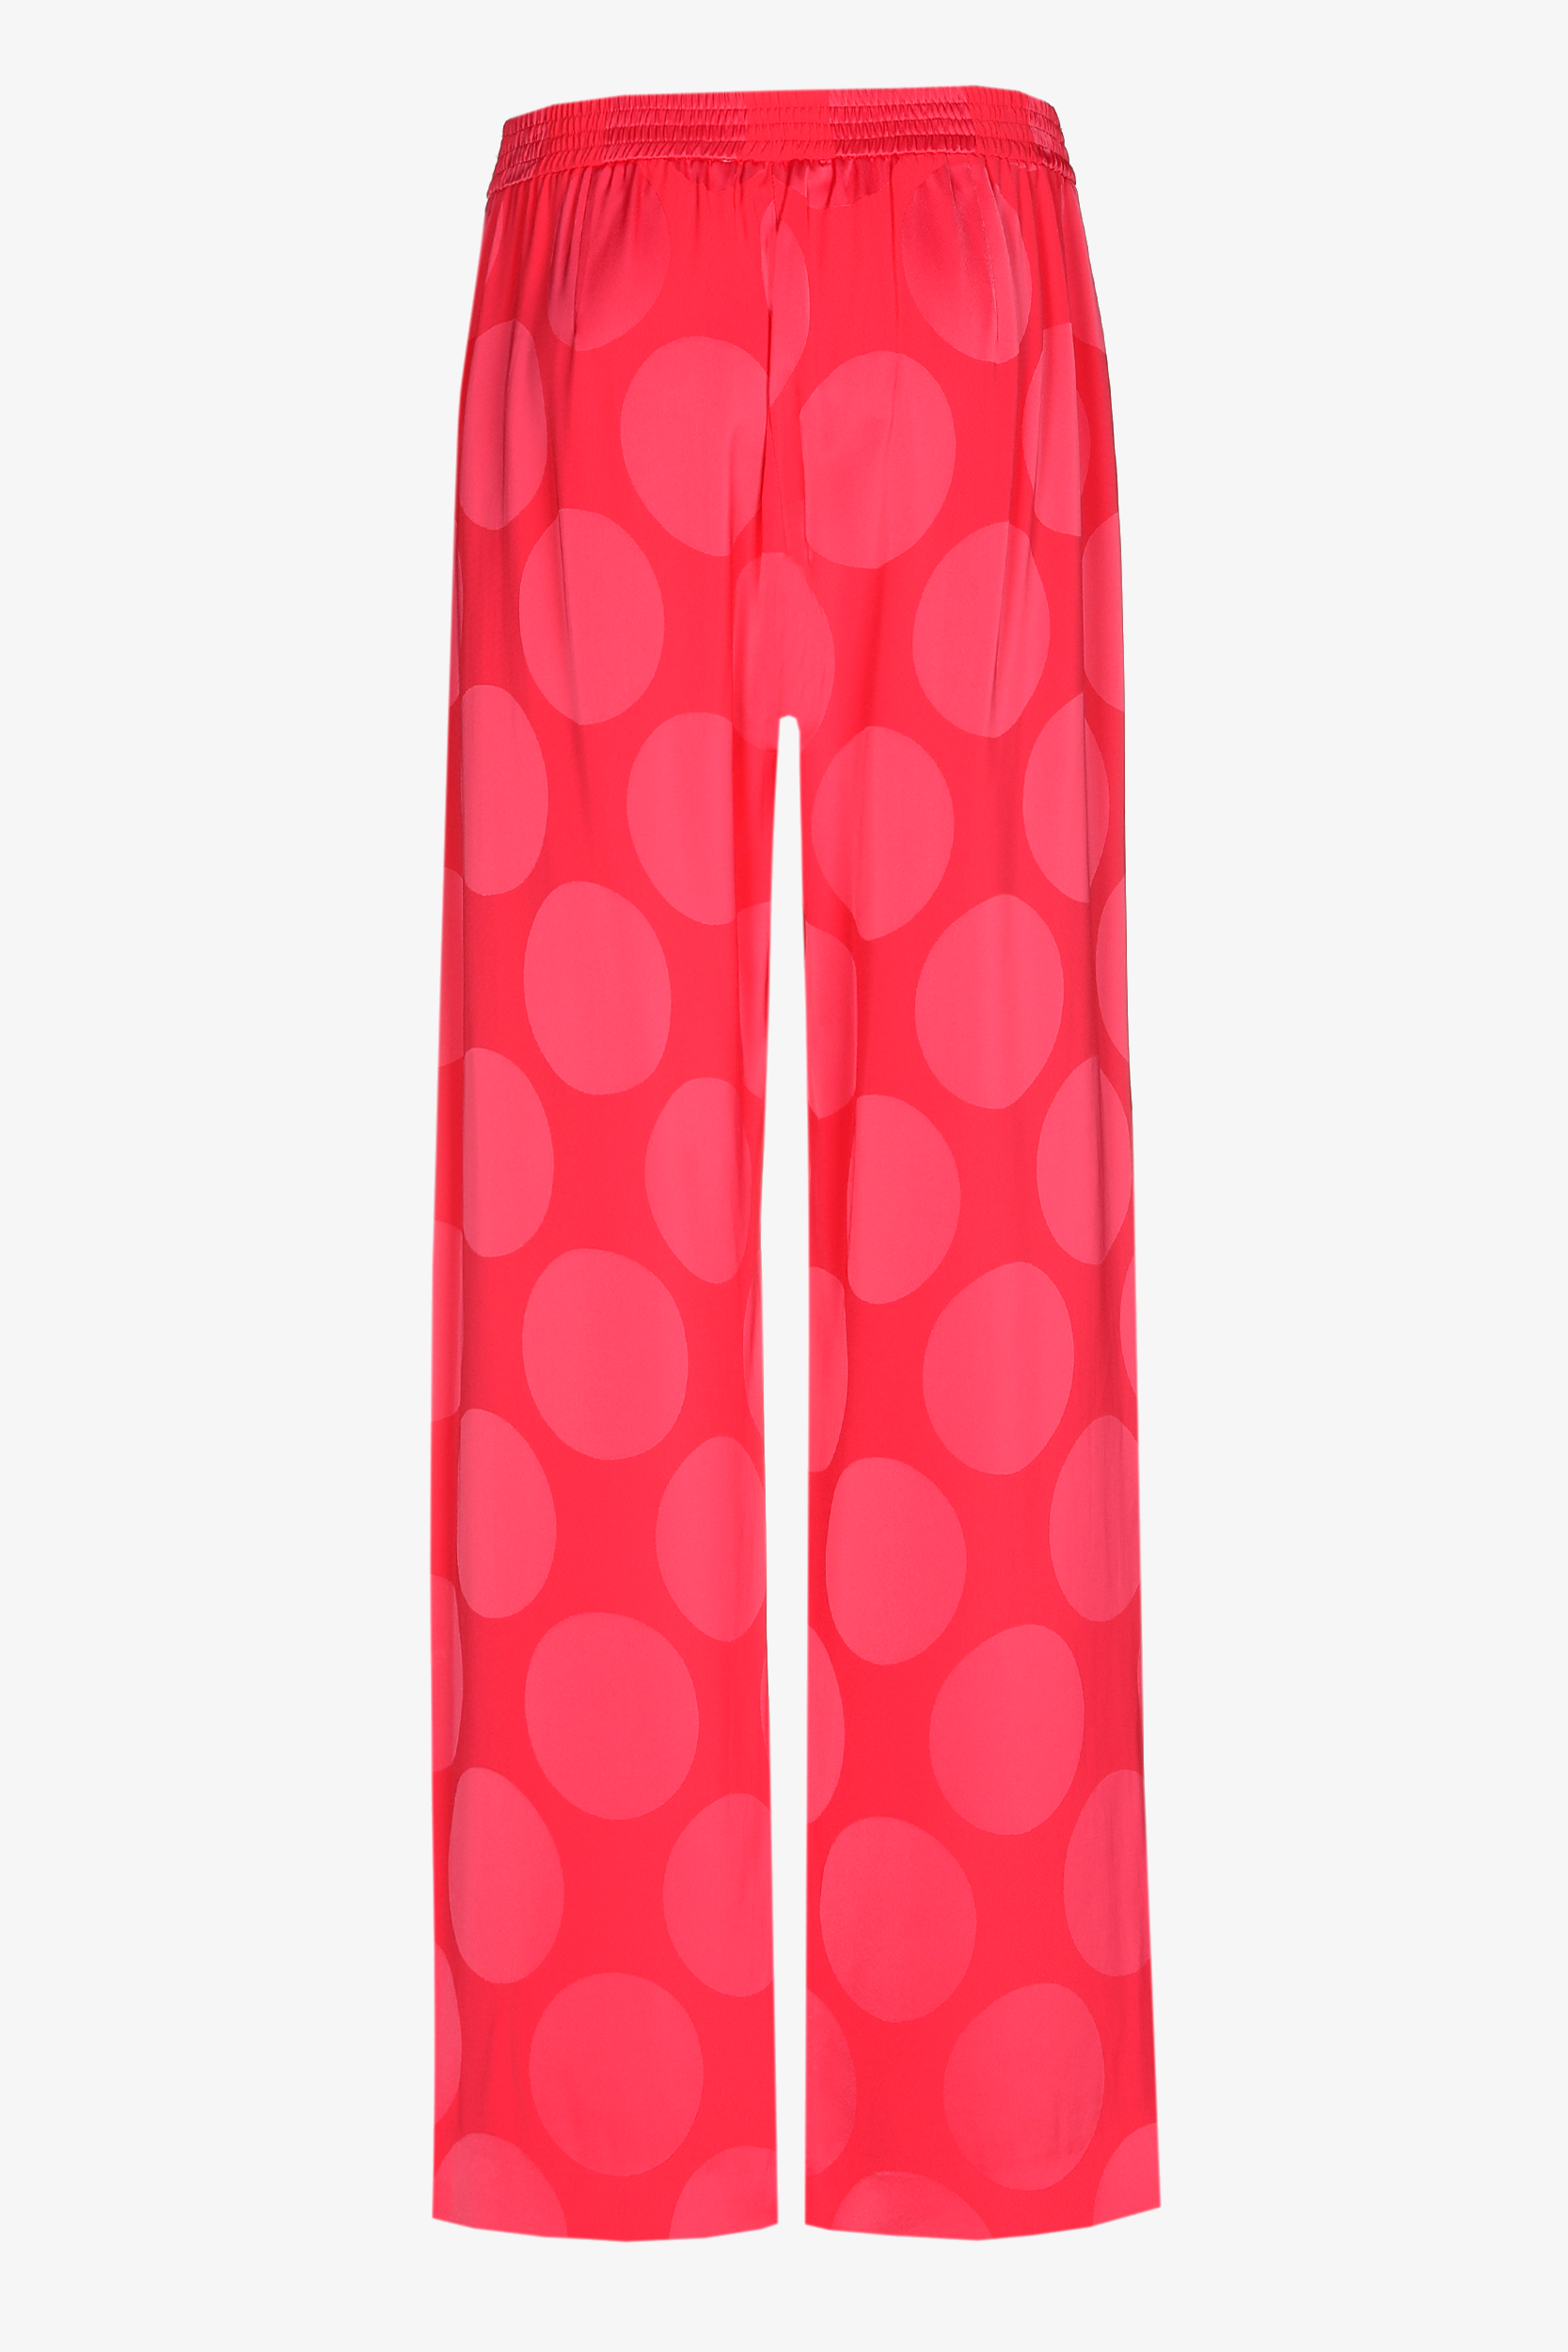 Pantalon mat avec motif brillant